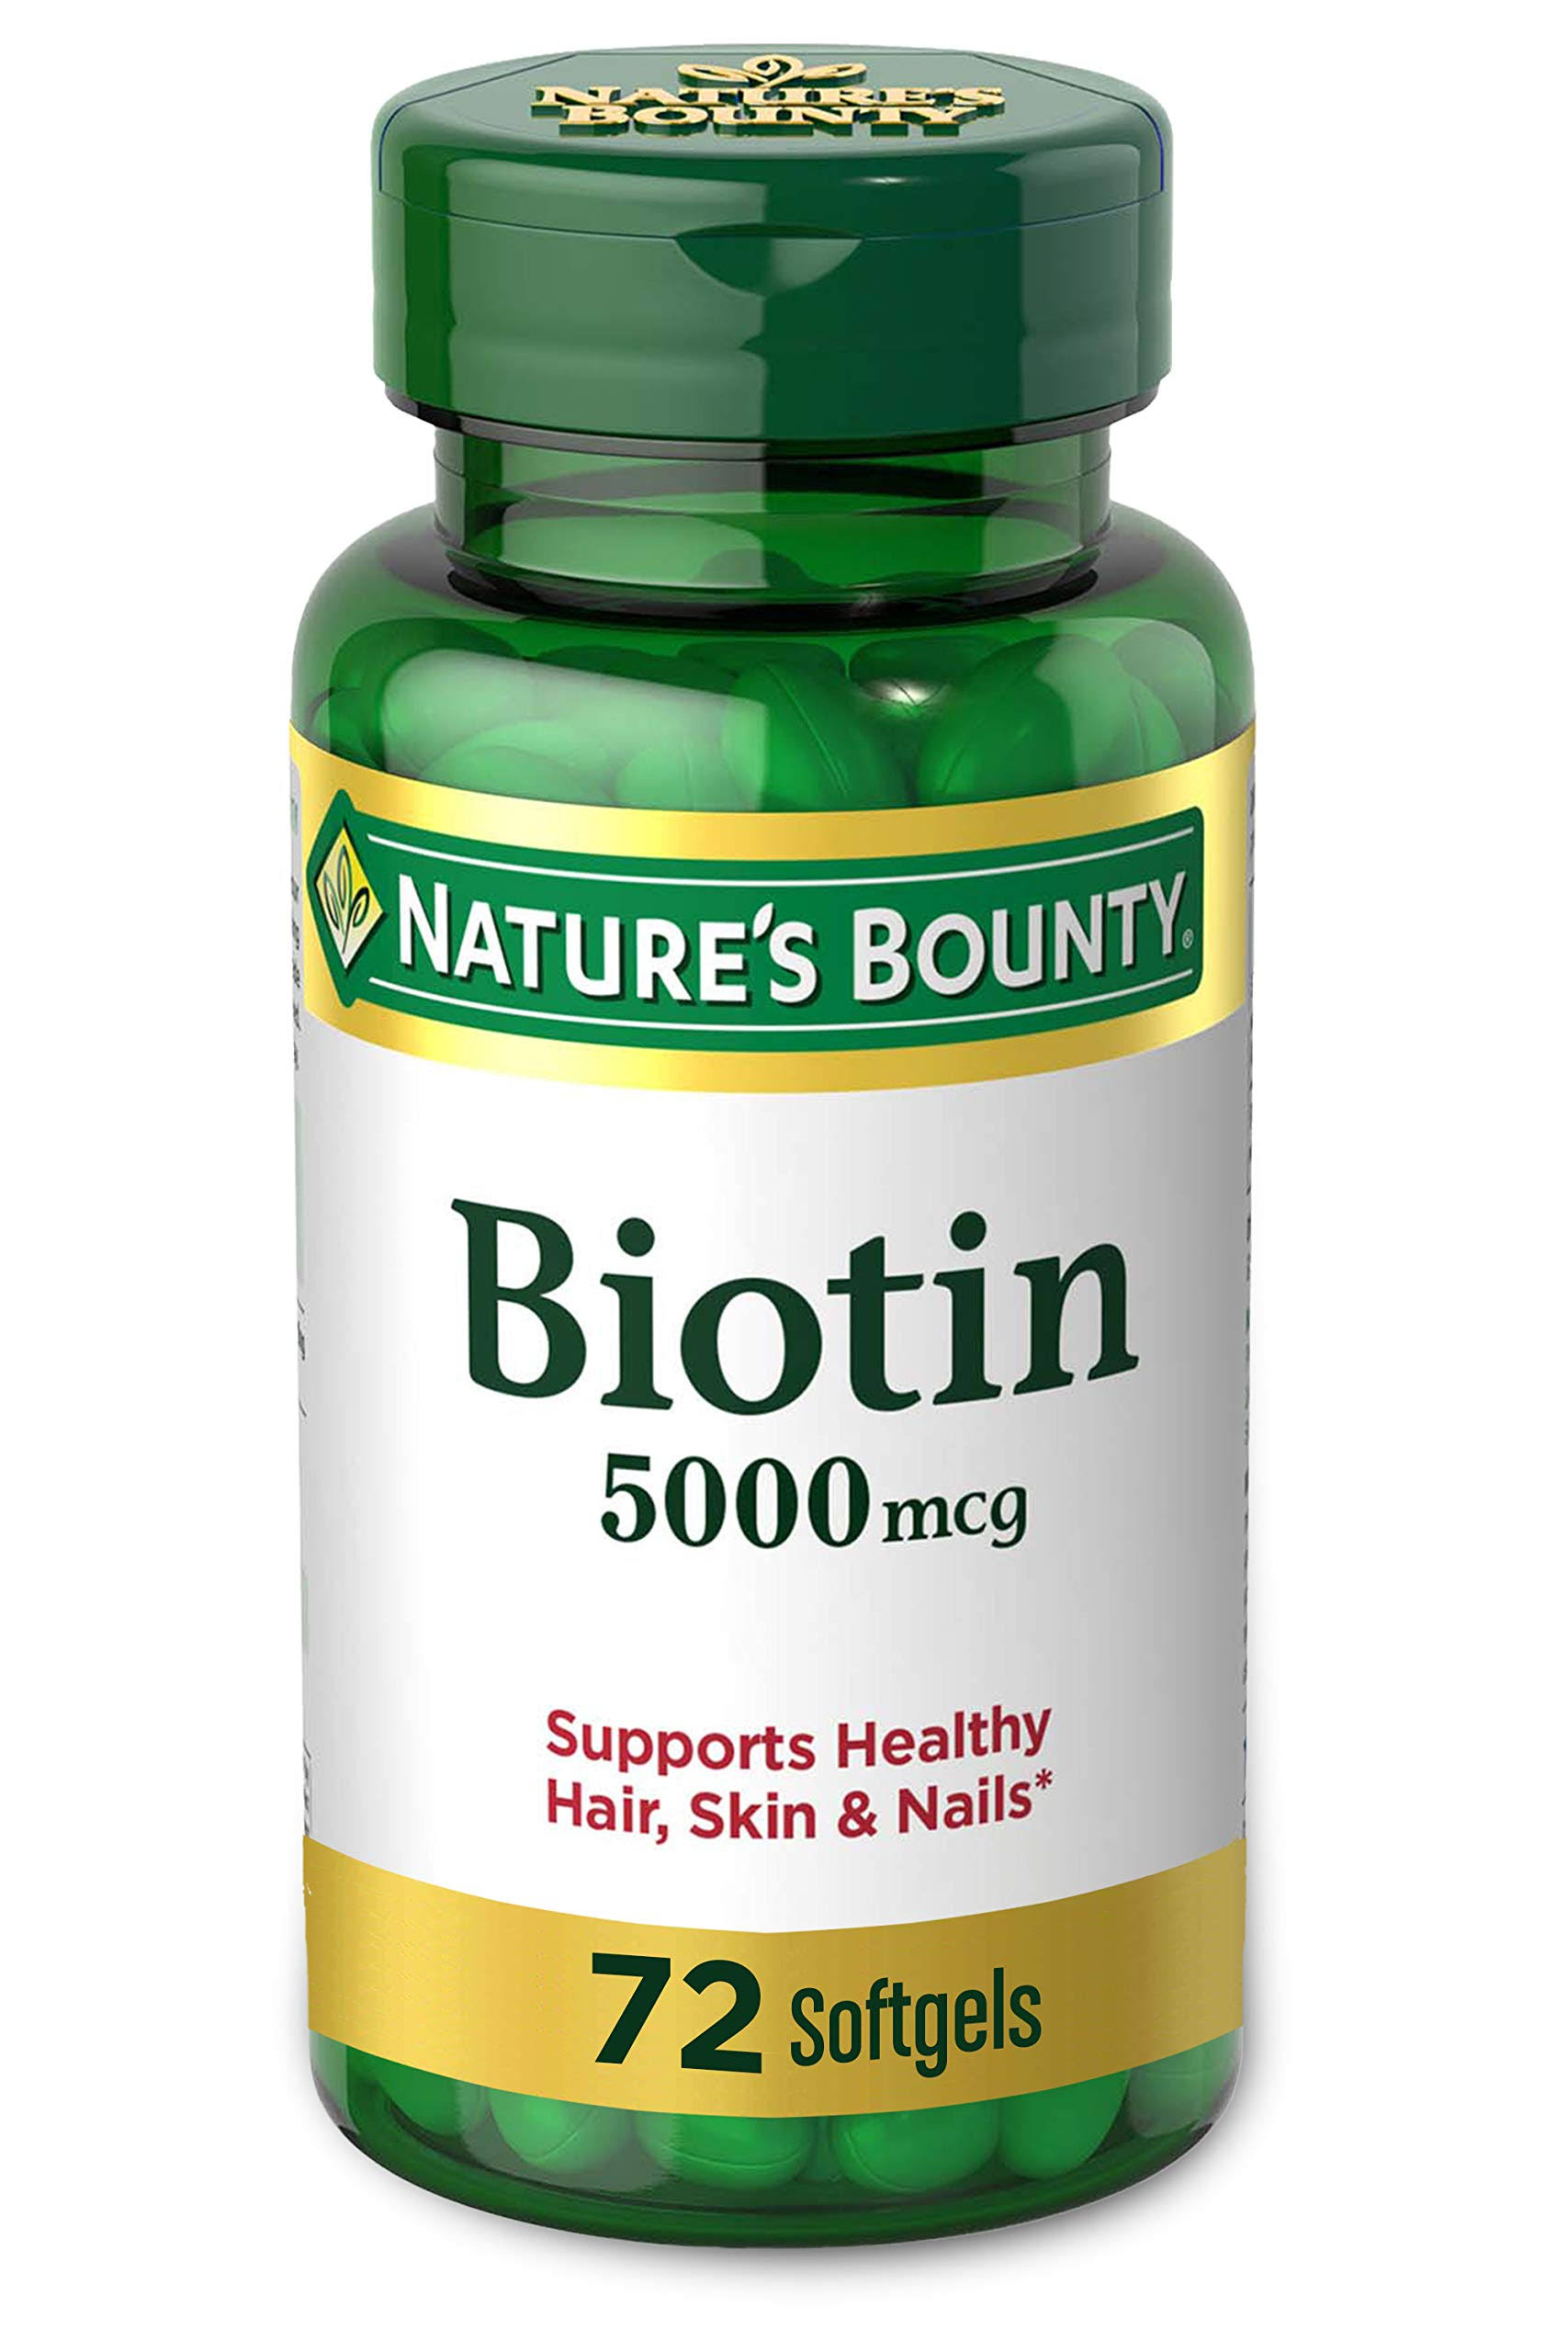 Nature's Bounty Super Potency Biotin Supplement - 5000mcg, 72 Count